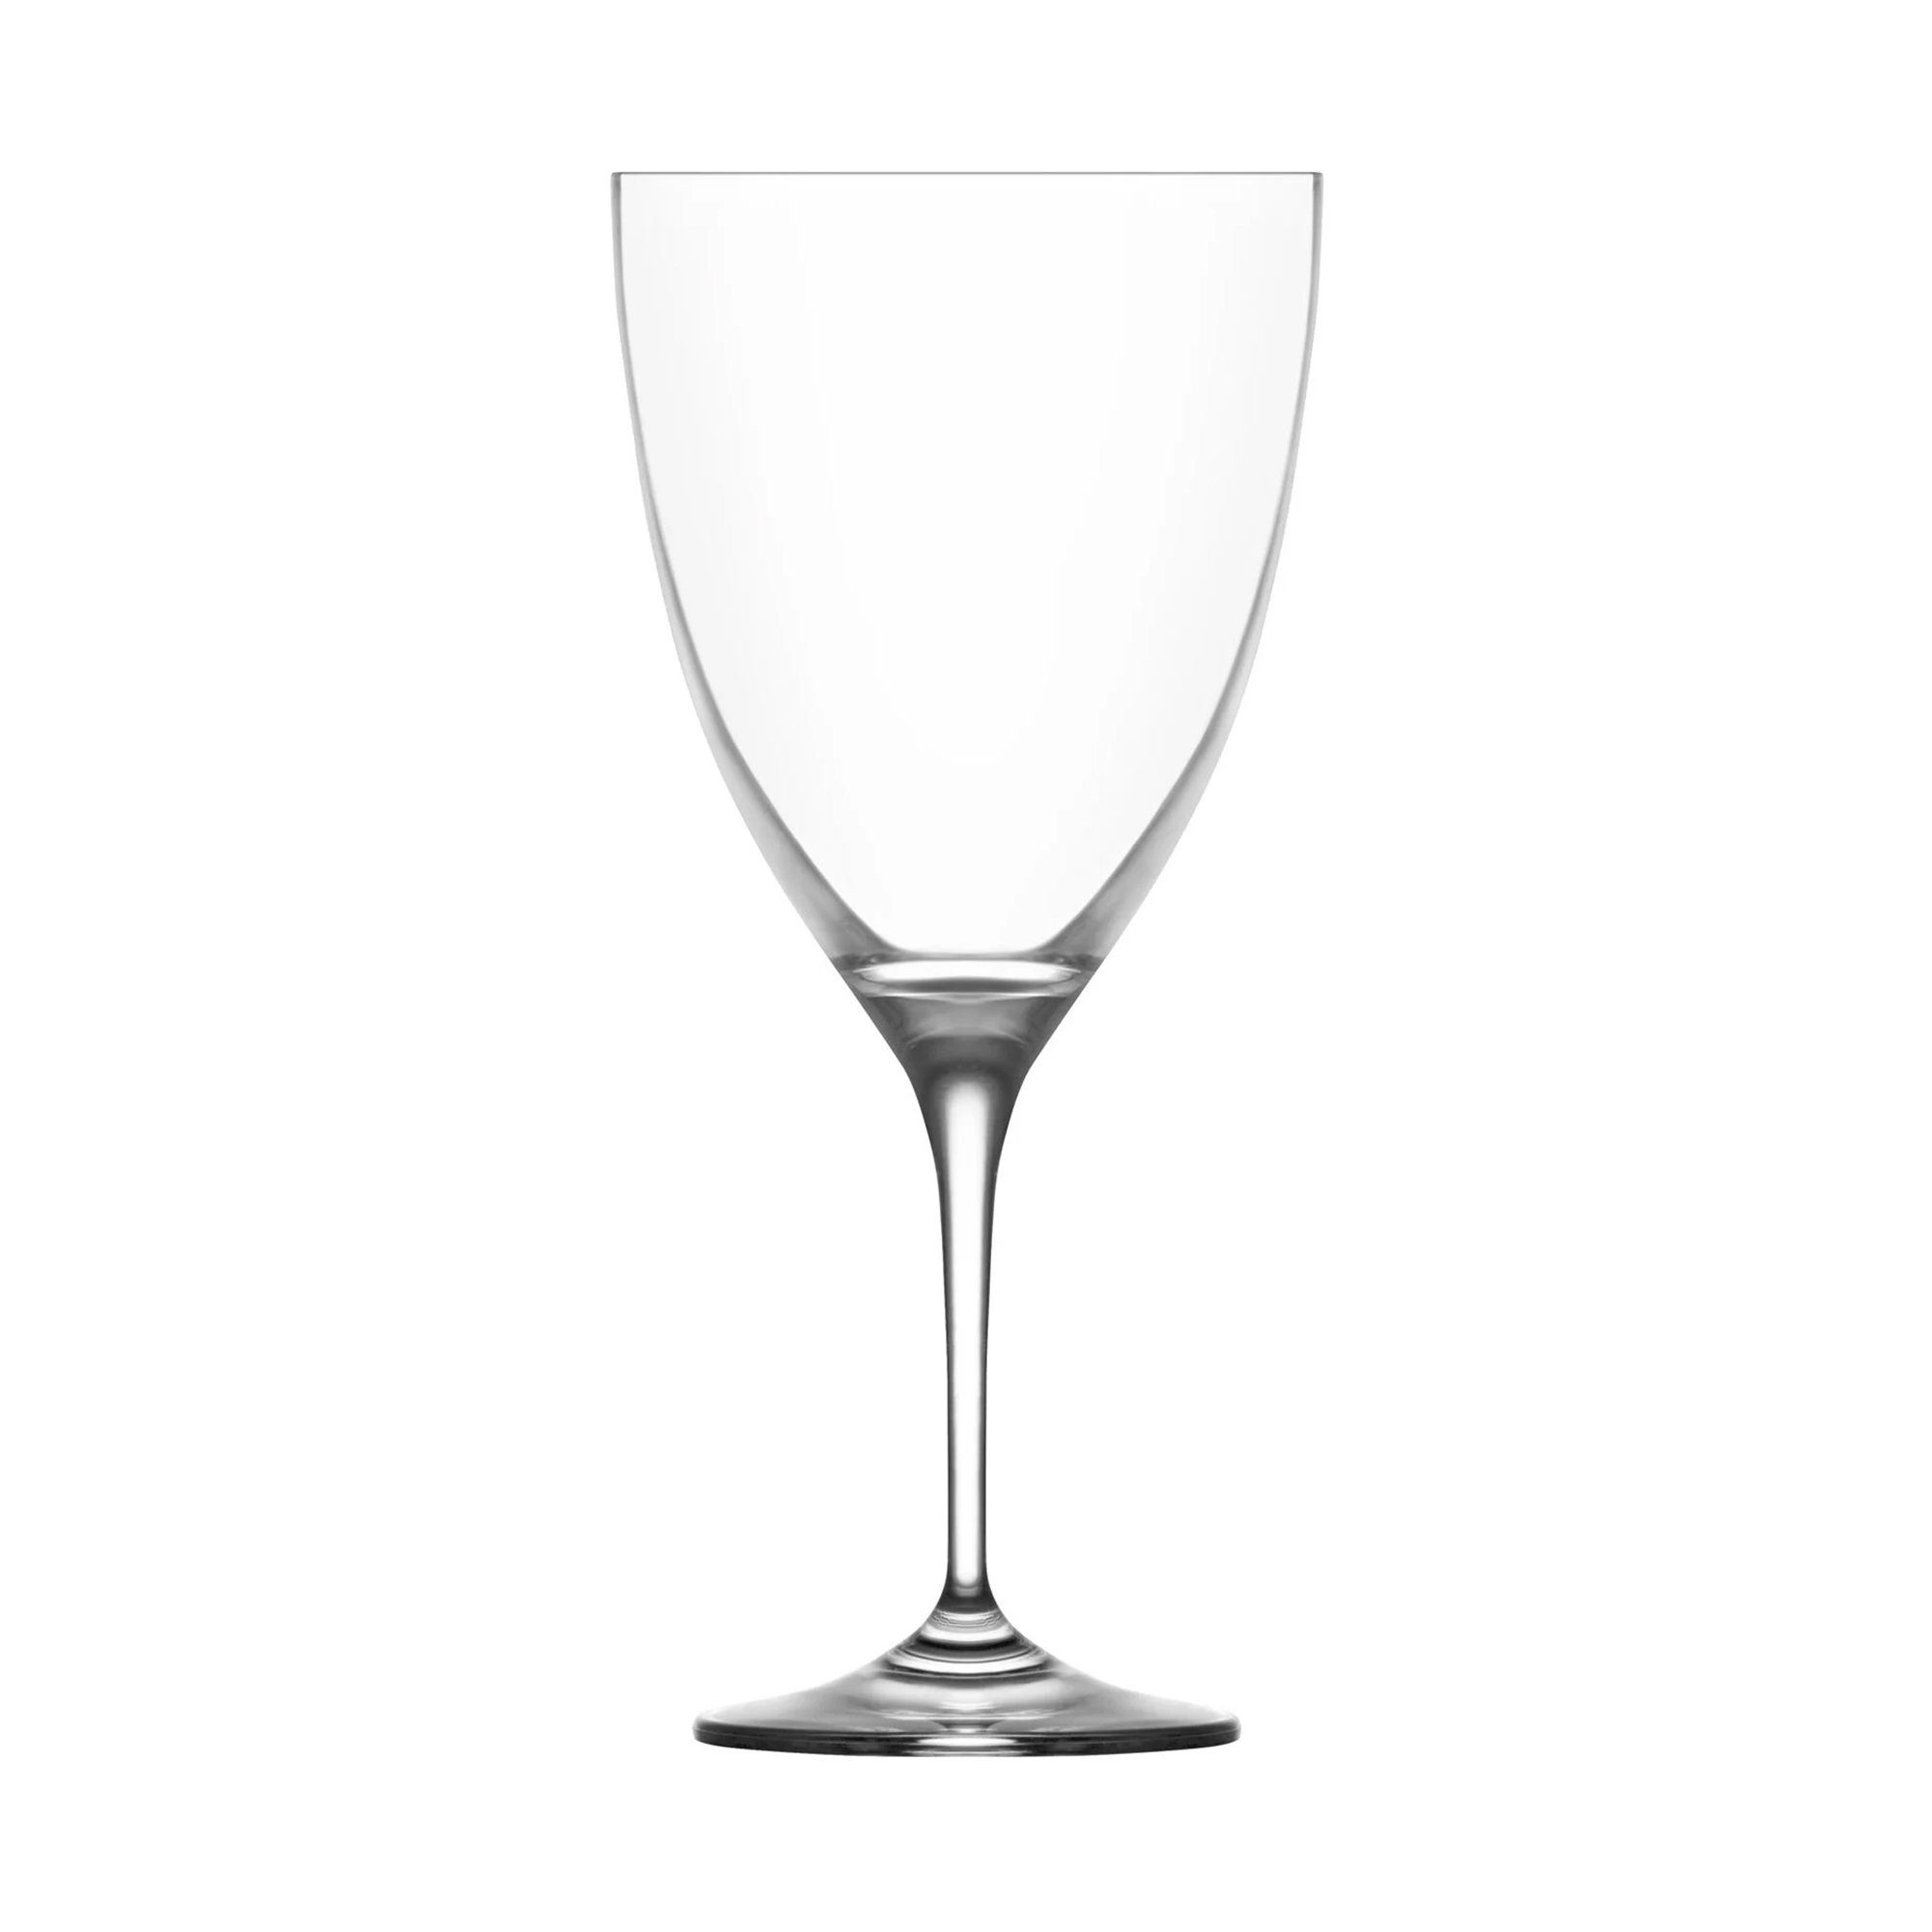 LAV Weinglas Weingläser 500 ml 6 tlg VIO192 Gläser Weinglas Rotwein, Kristall Glas, Spülmaschinenfest